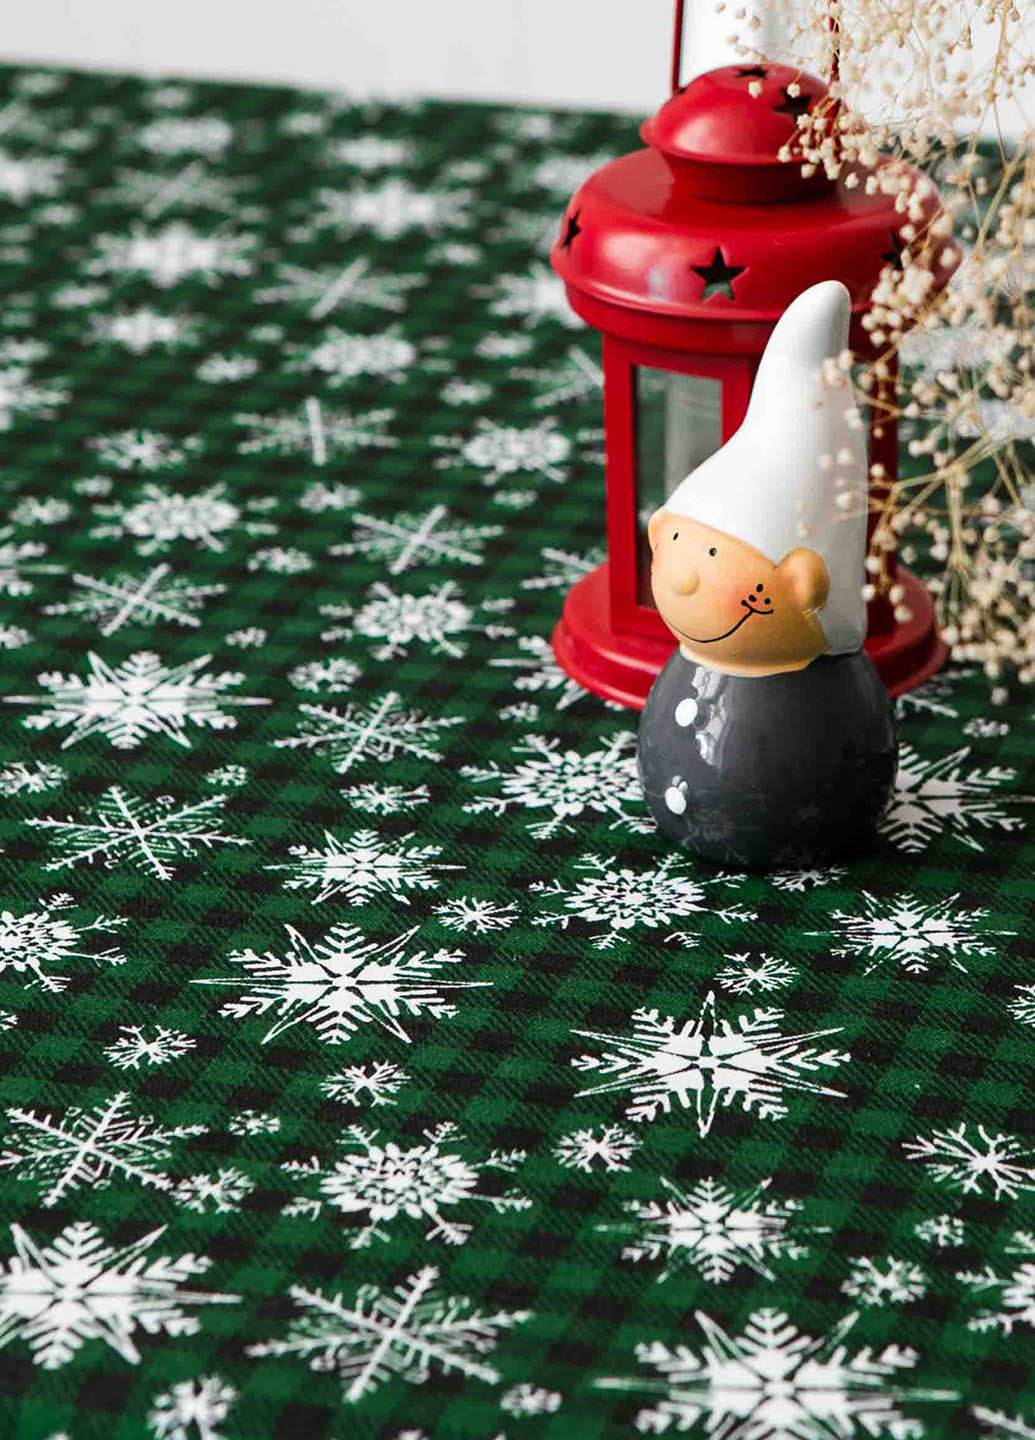 Новорічна скатертина з тефлоновим покриттям "Сніжинки зелені" 1.2м х 1.5м + 4 серветки Homedec - (255089229)